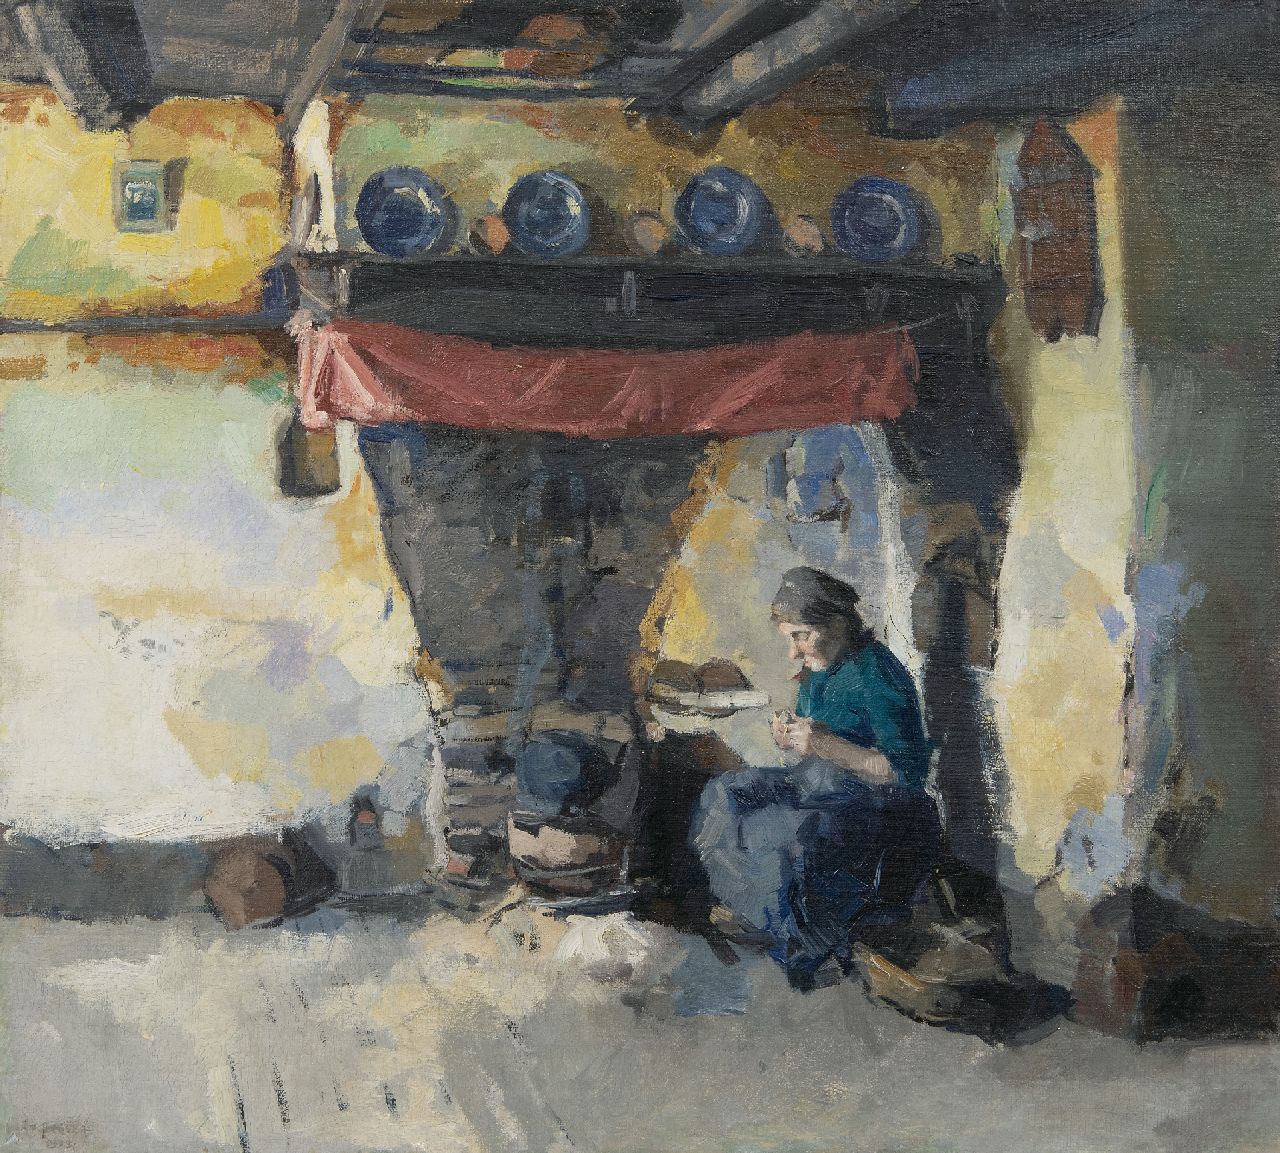 Beever E.S. van | 'Emanuël' Samson van Beever | Schilderijen te koop aangeboden | Aardappelschillende vrouw bij de haard, olieverf op doek 42,4 x 47,4 cm, gesigneerd linksonder